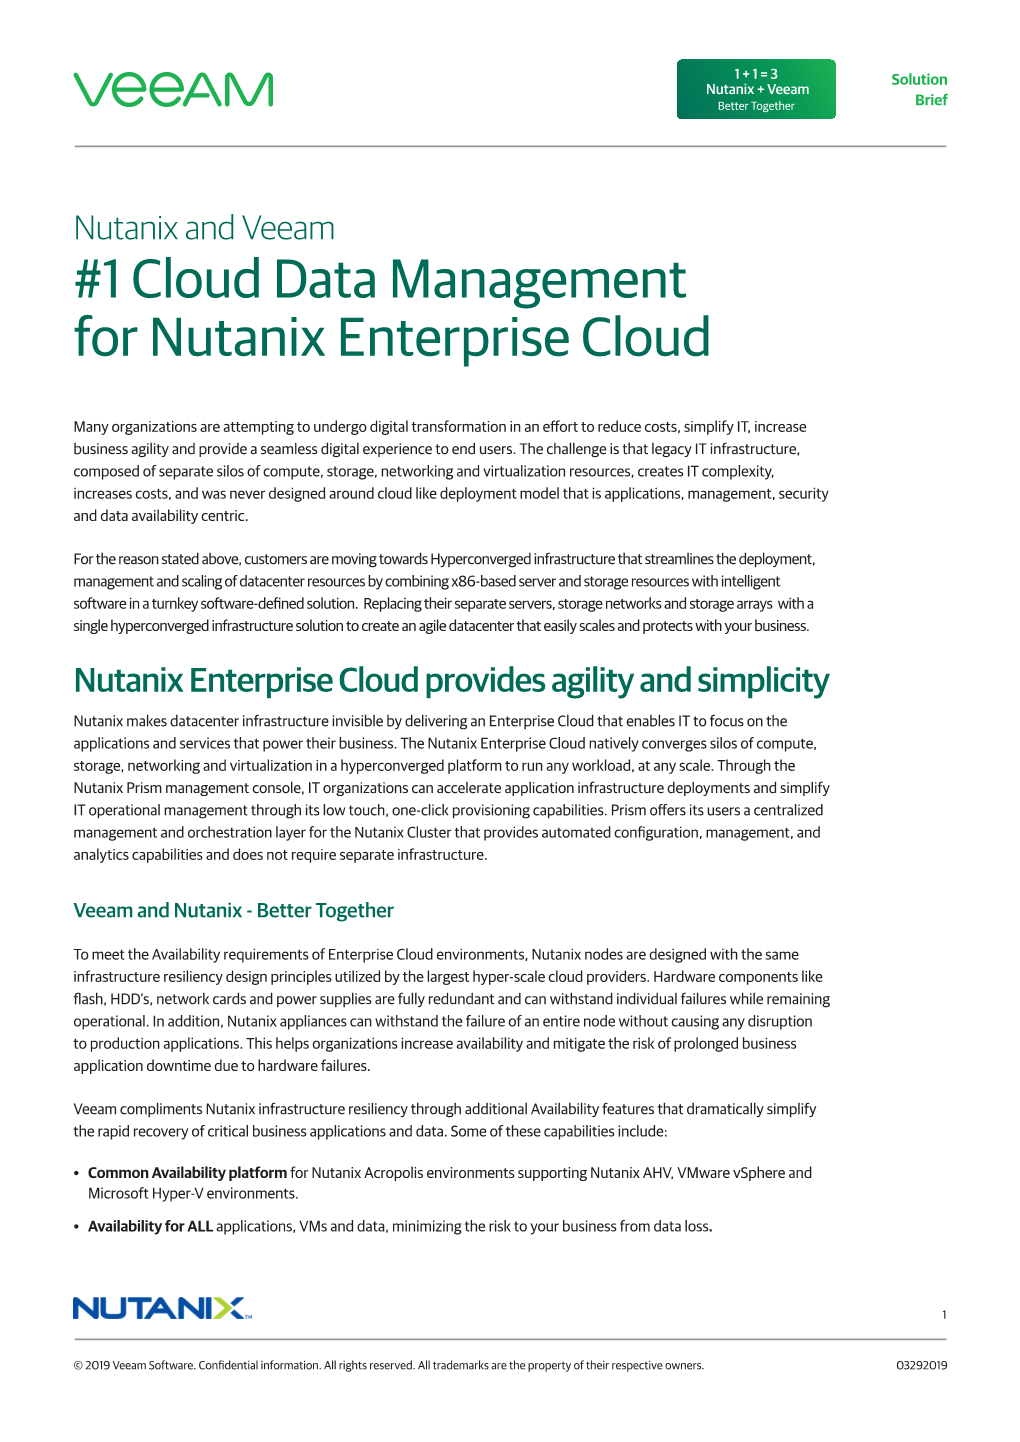 Cloud Data Management for the Nutanix Enterprise Cloud